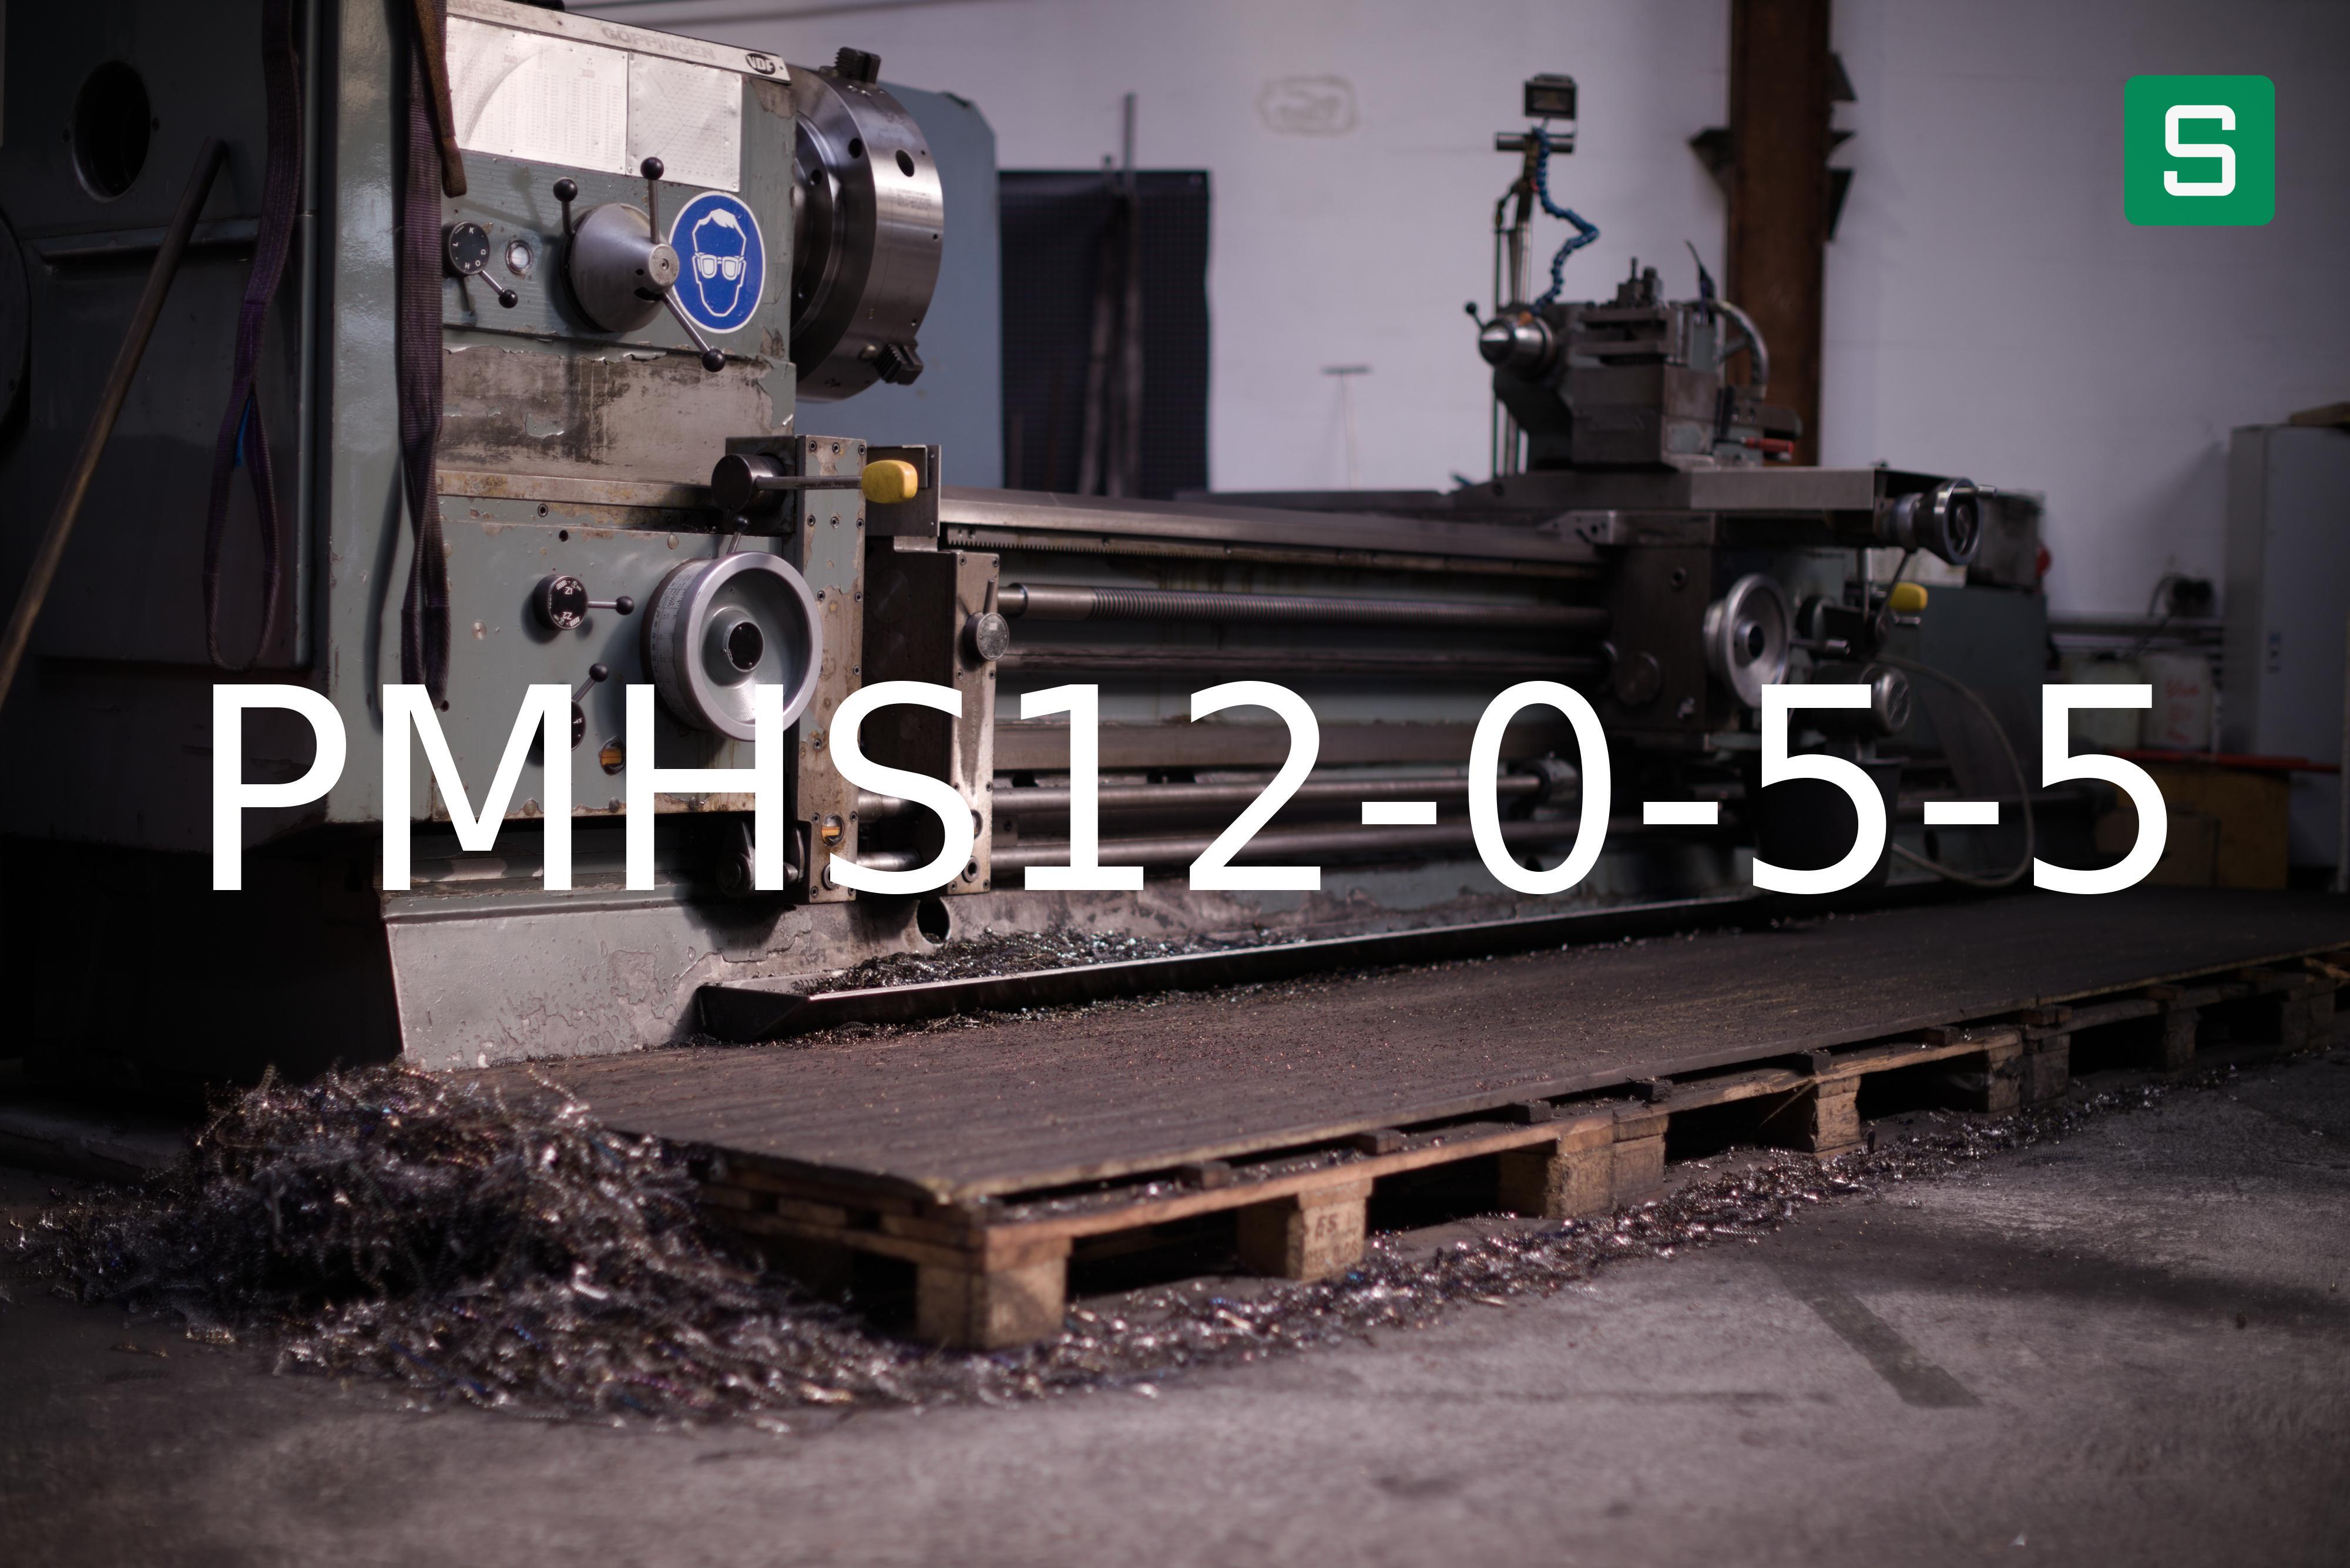 Steel Material: PMHS12-0-5-5